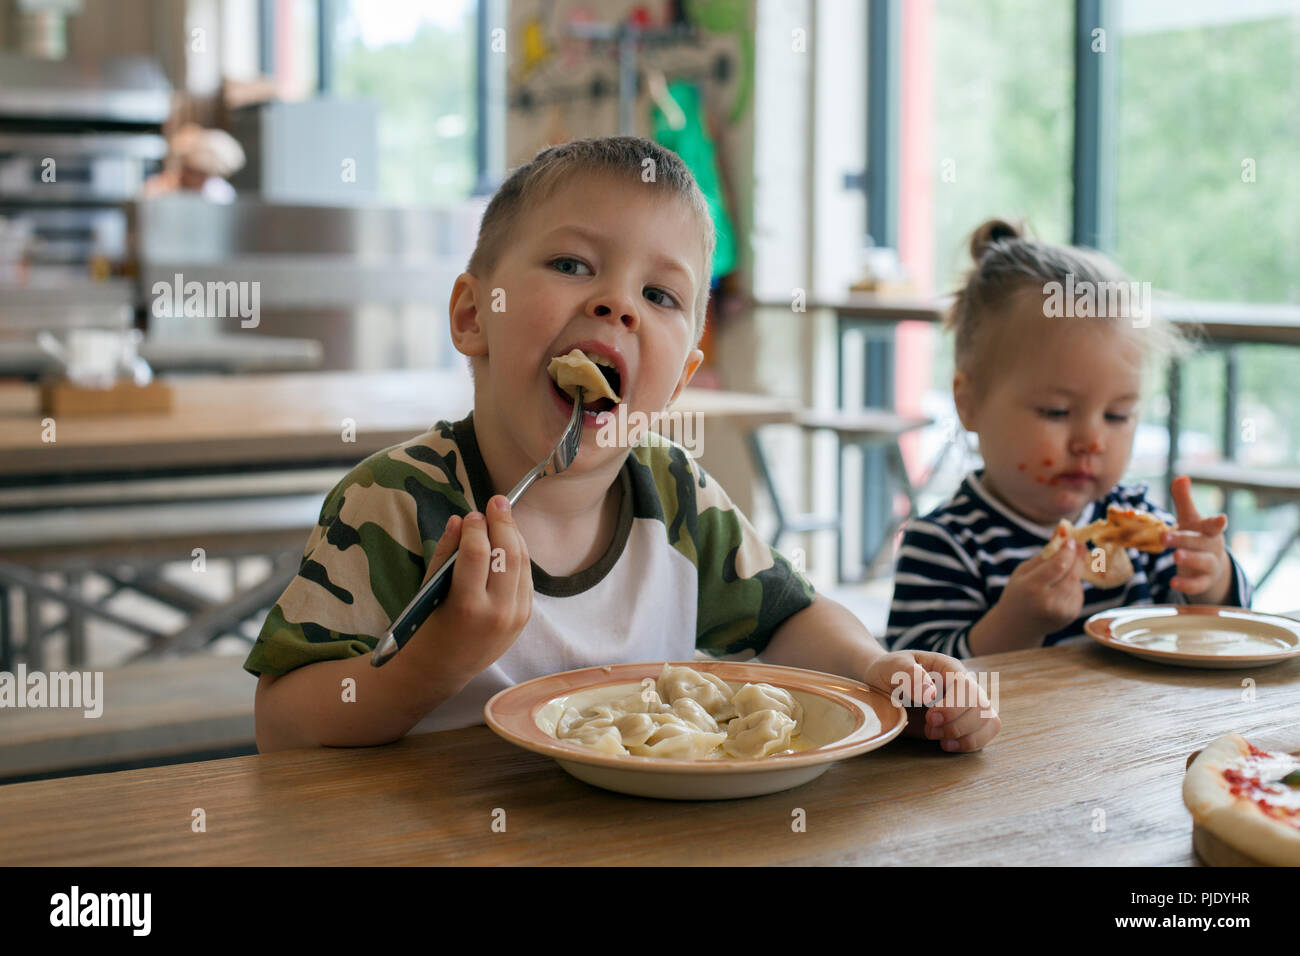 Los niños comen pizza y dumplings de carne en el café. Los niños que comen alimentos poco sanos en interiores. Los hermanos en la cafetería, el concepto de vacaciones de la familia. Foto de stock